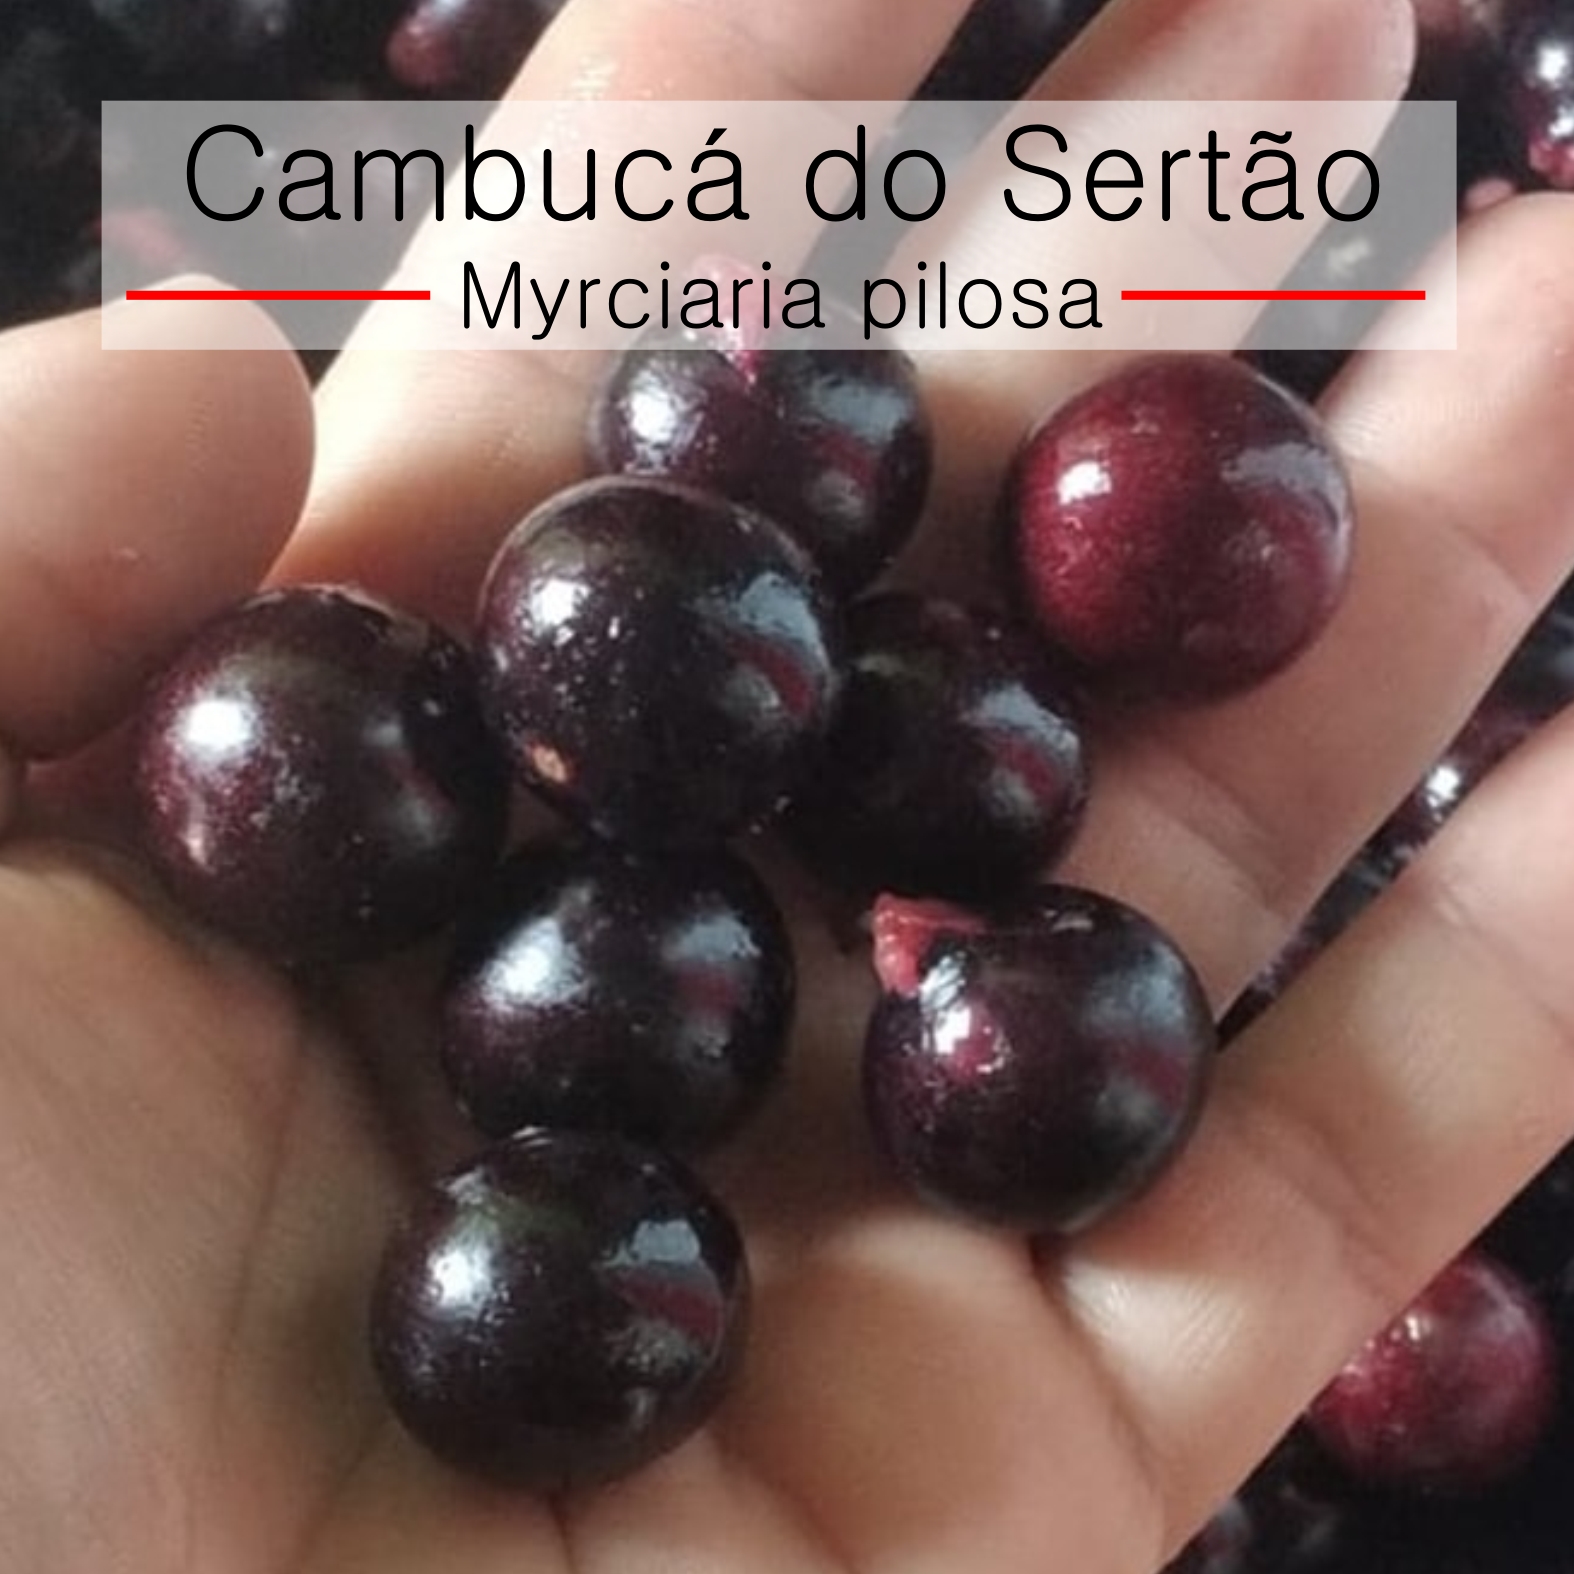 Myrciaria pilosa - Cambuca do Sertao - 1 fresh seed / 1 frischer Samen